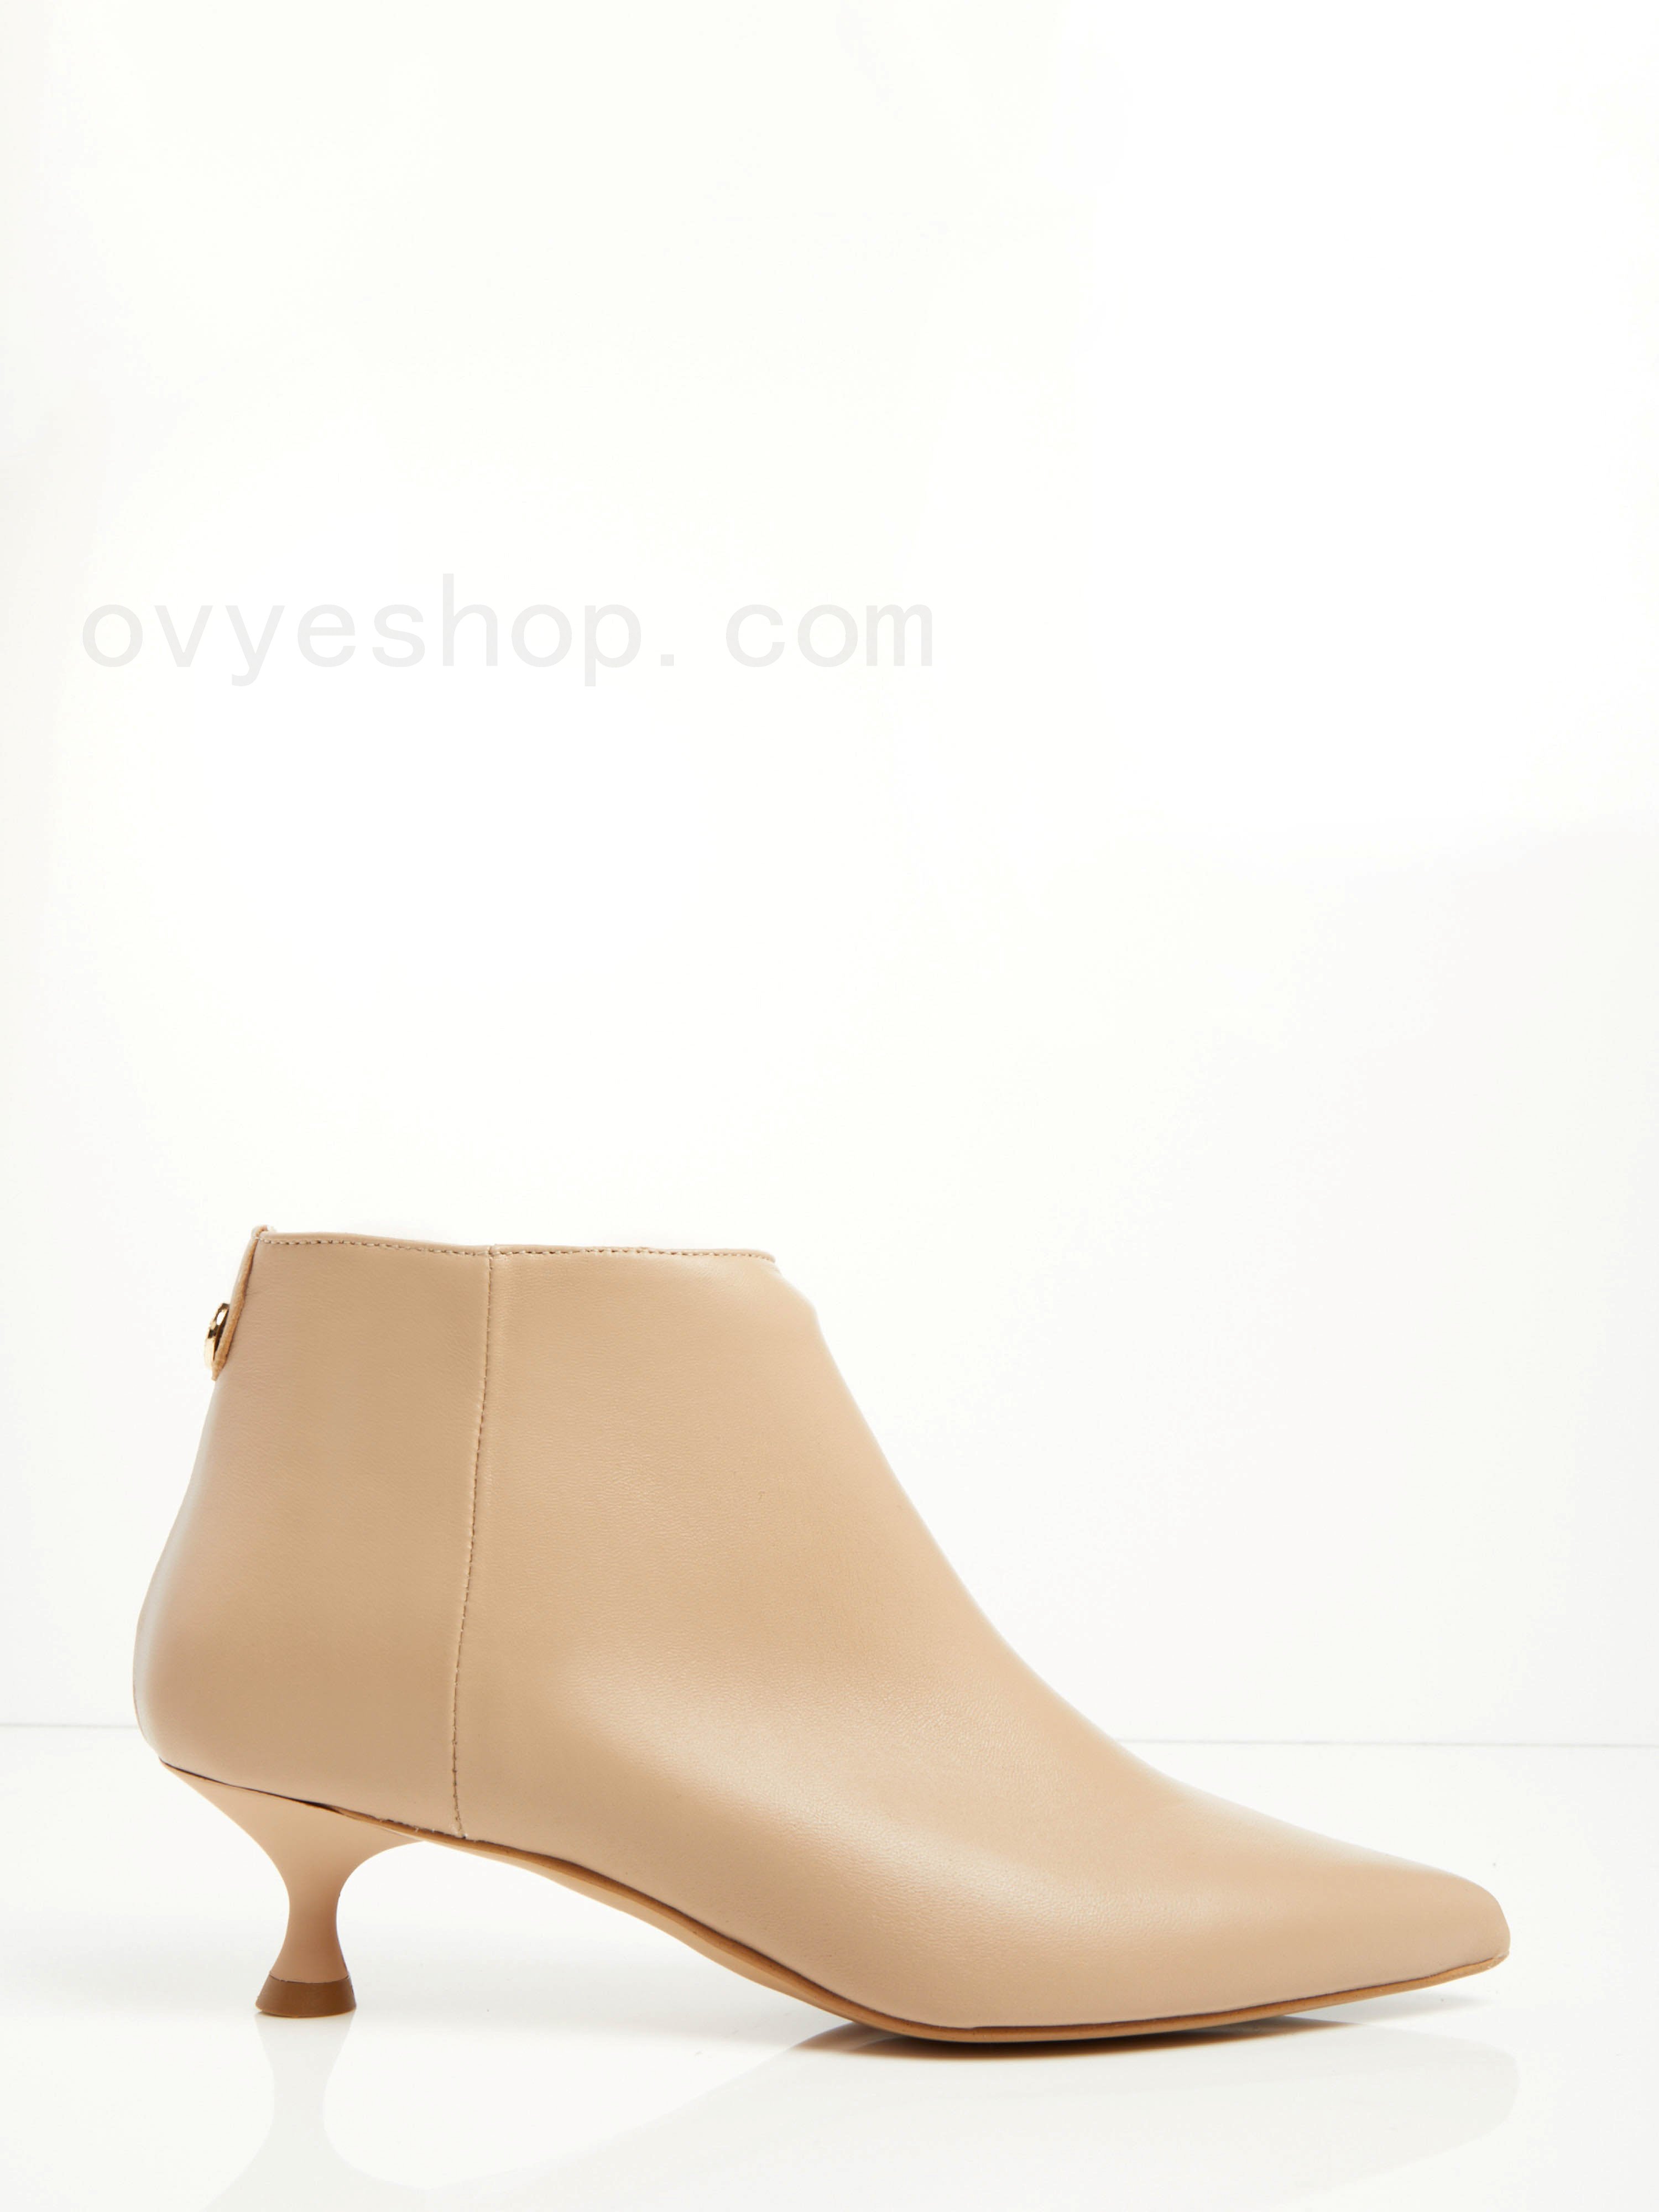 Sconti Fino Al 70% Leather Ankle Boots F0817885-0411